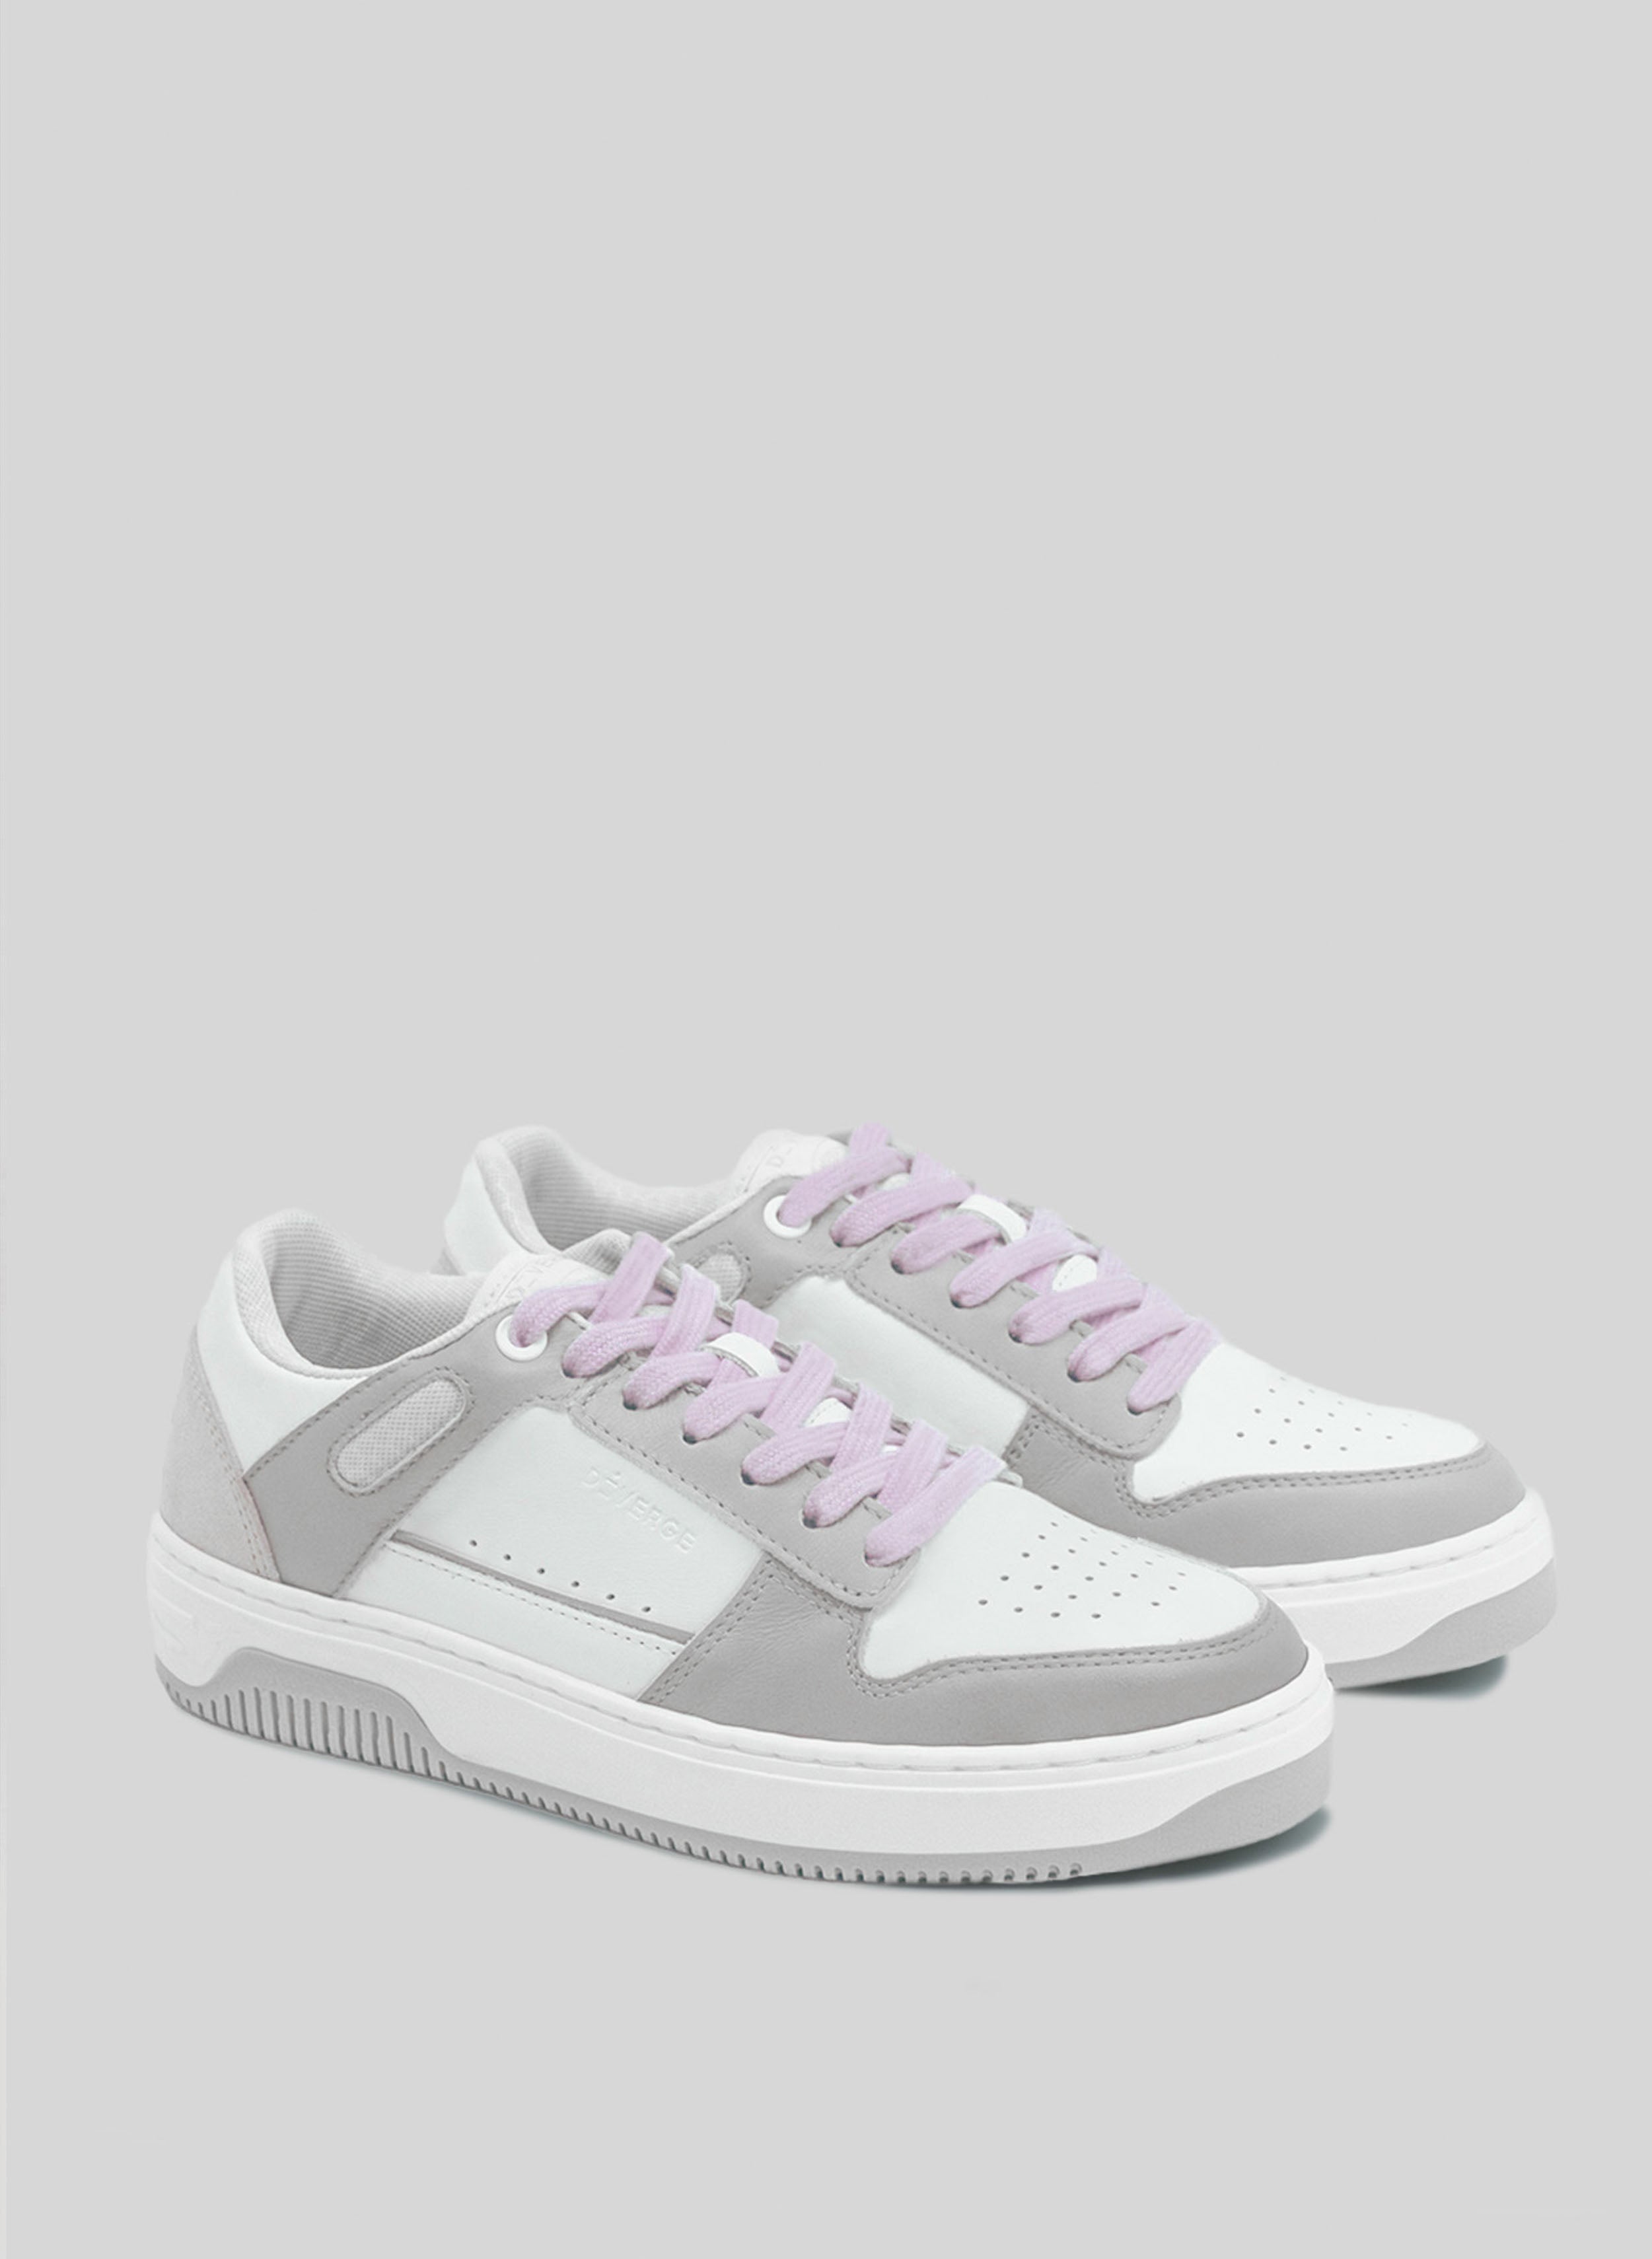 Une basket blanche et grise avec des lacets violets, par Diverge promouvant l'impact social et les chaussures personnalisées à travers le projet imagine.